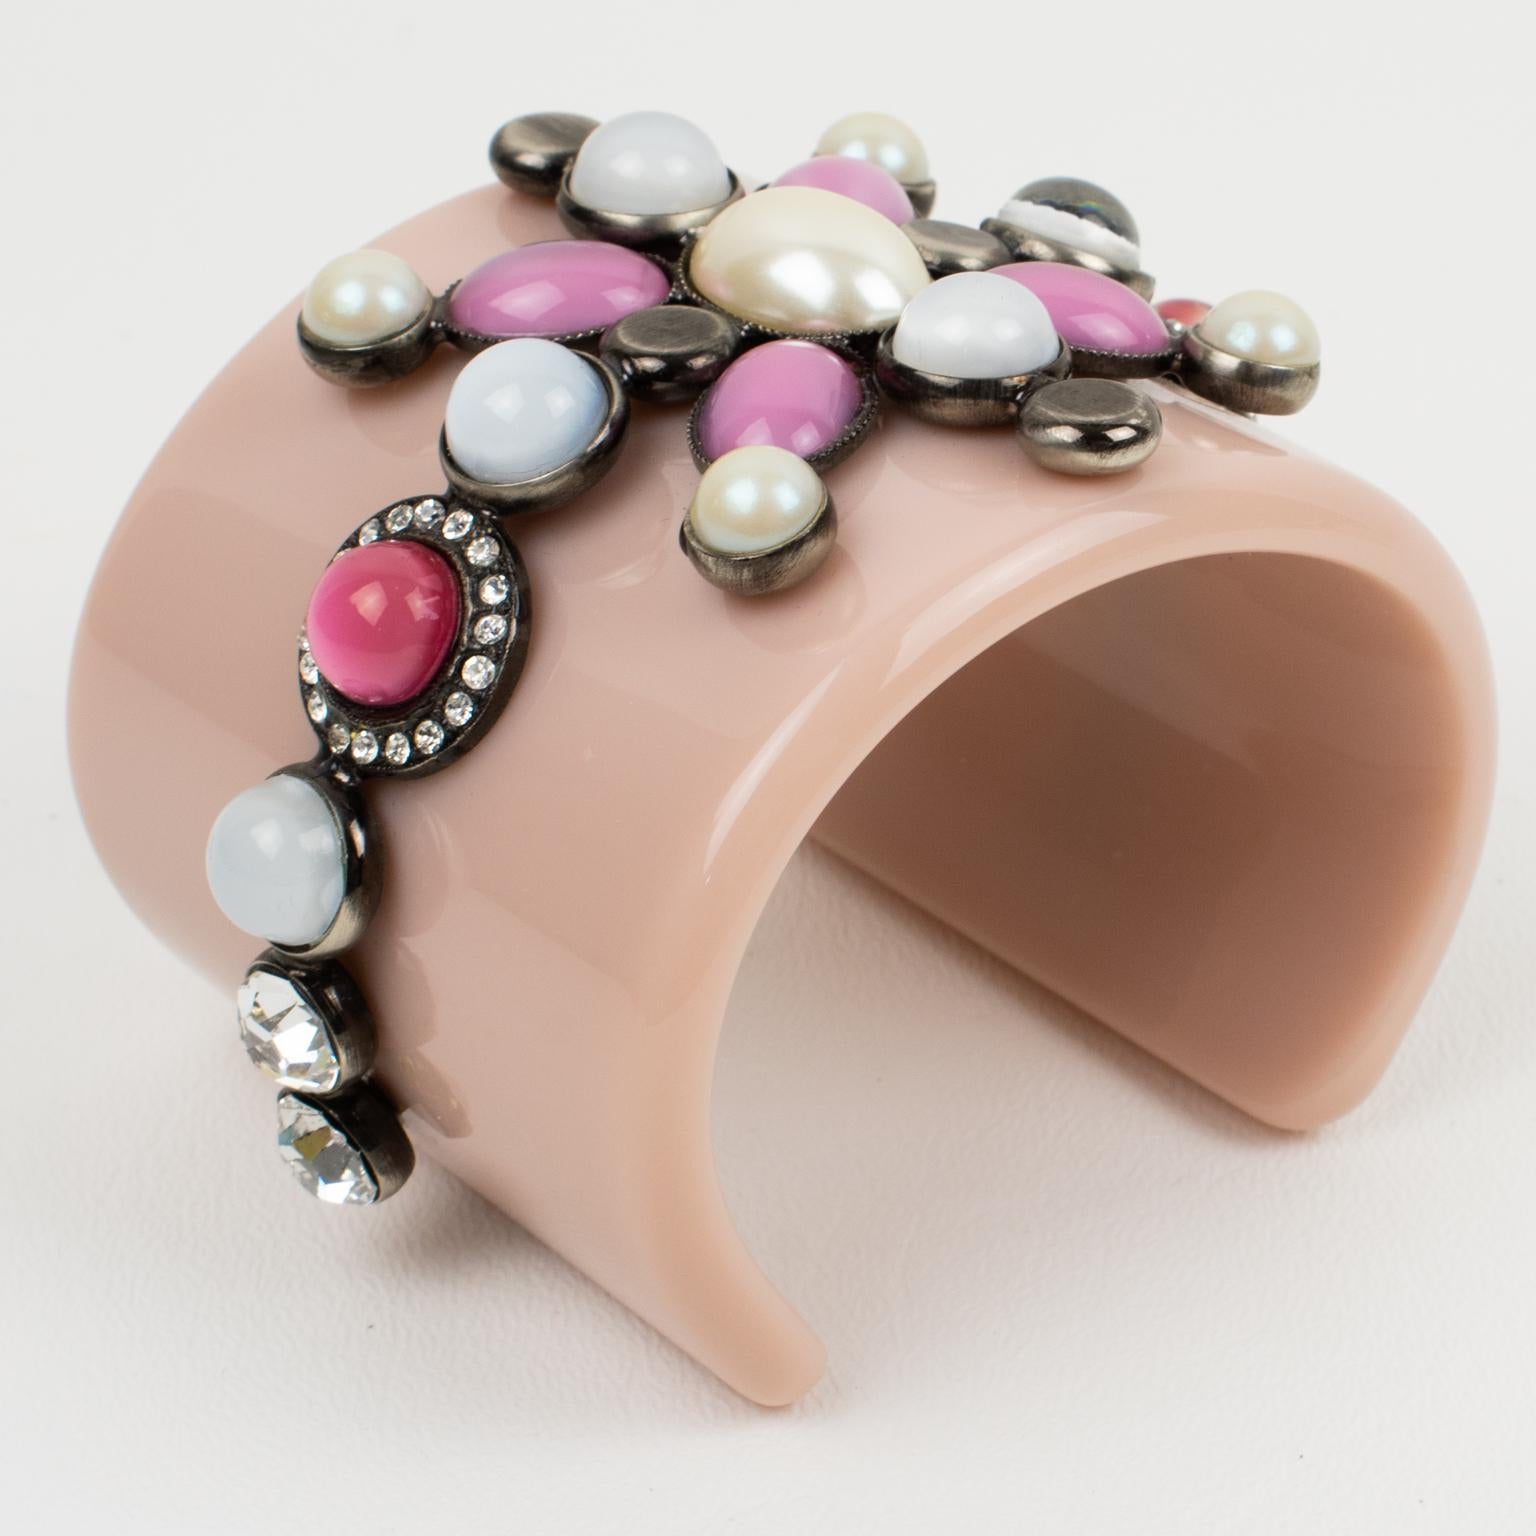 Emilio Pucci a conçu cet adorable bracelet baroque en résine massive. Cette manchette massive est en résine rose pâle ornée d'un motif géométrique encadré de bronze et surmonté de cabochons en verre coulé et de strass en cristal. Le Design Jewelers